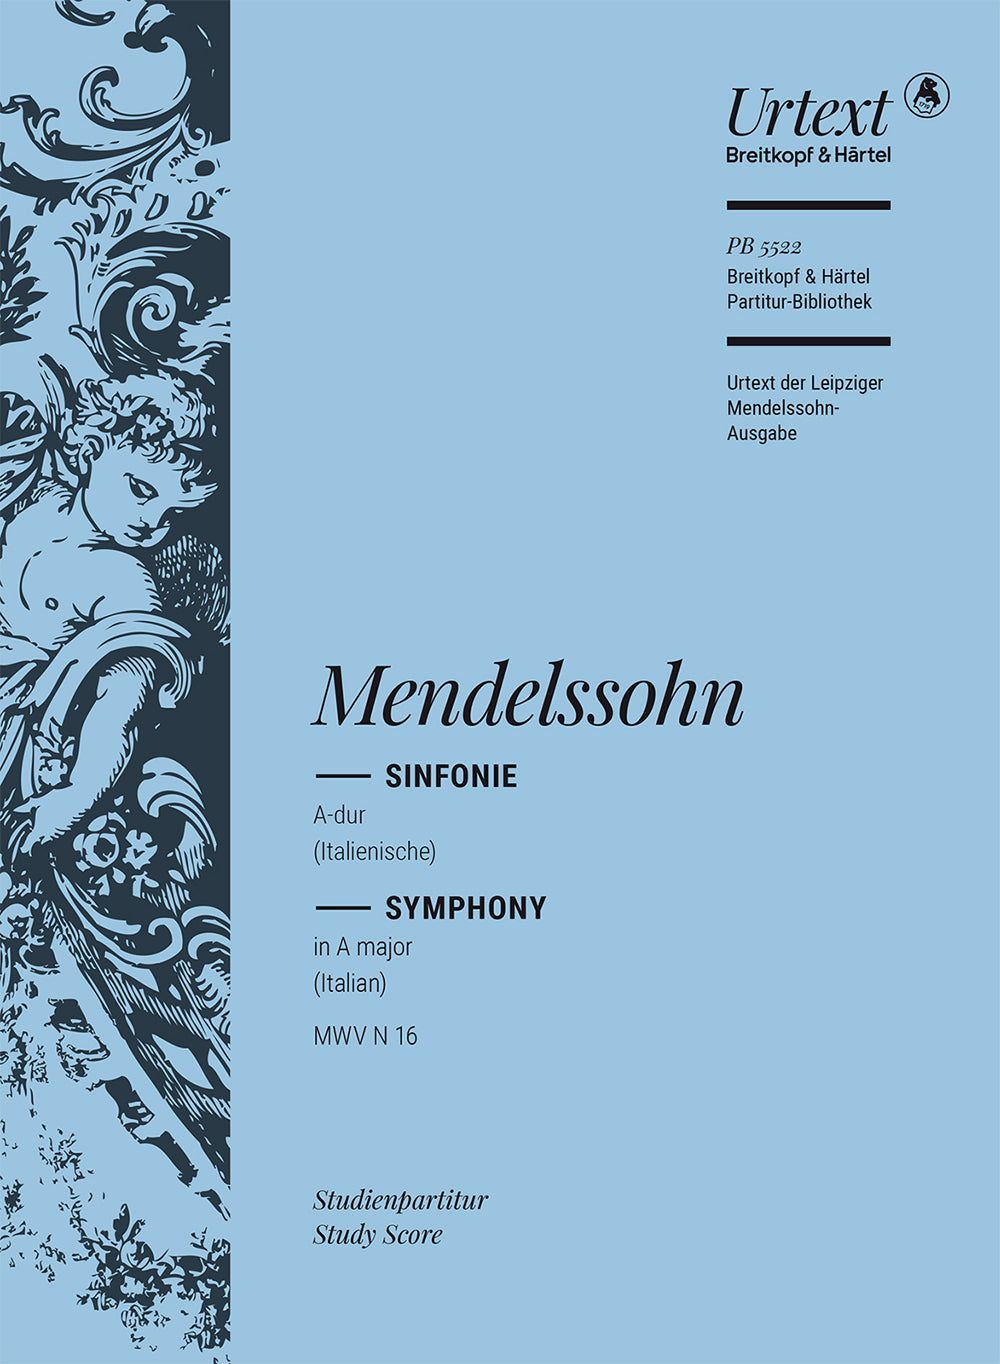 Mendelssohn Symphony No. 4 in A major, Op. 90